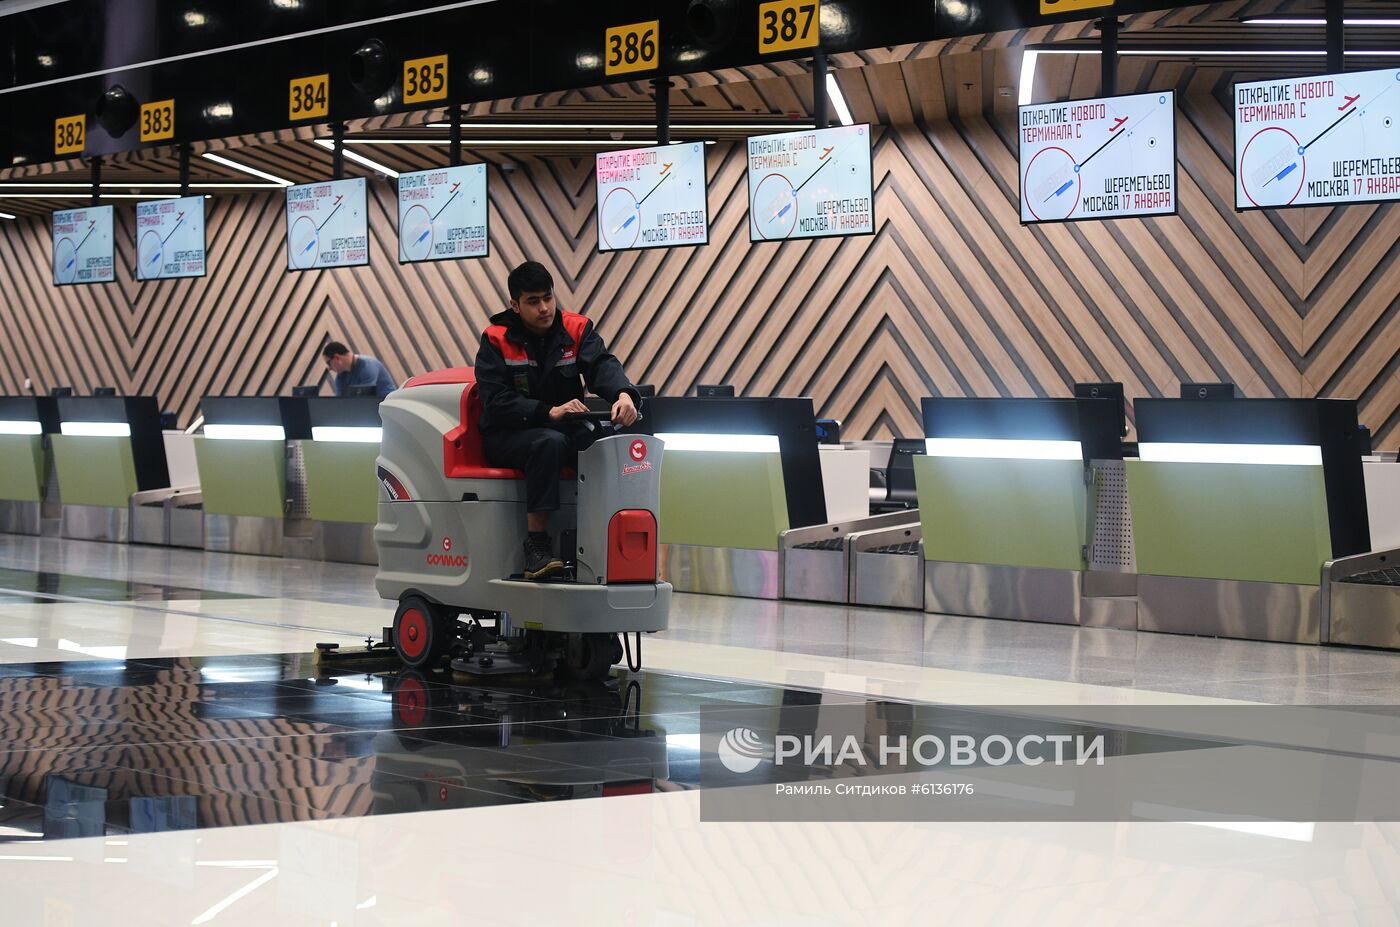 Открытие нового международного терминала С в Шереметьево  